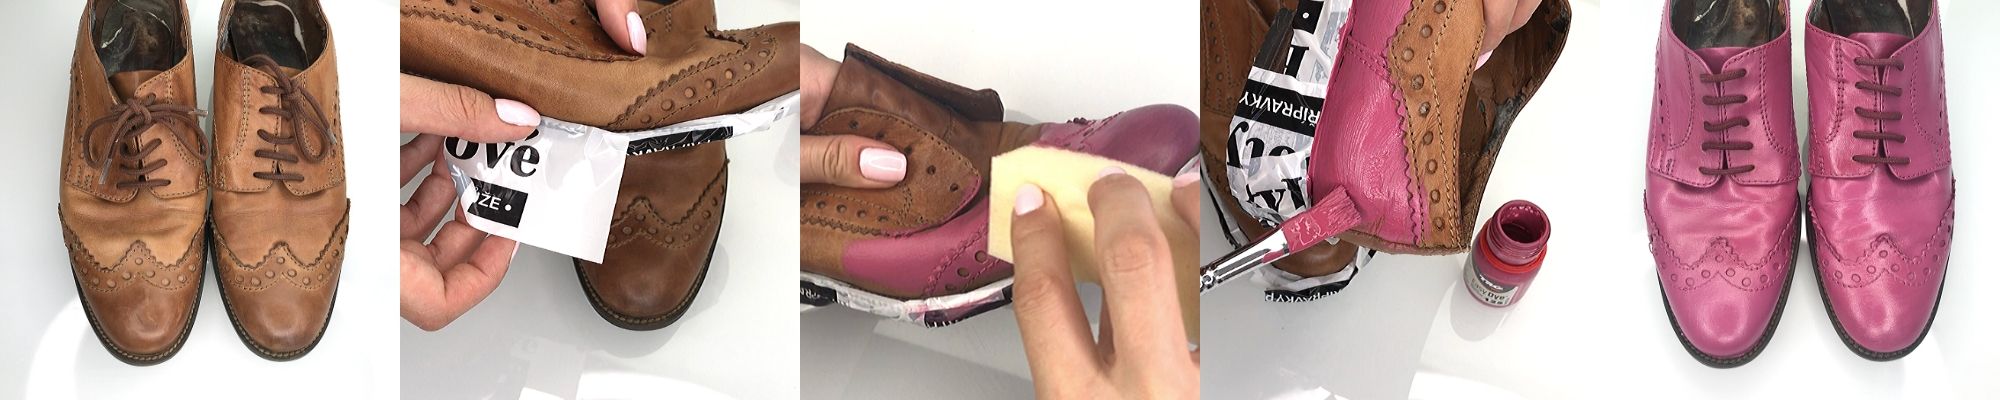 Barvení bot nabarvení obuvi hnědé polobotky nabarvené na růžovo růžová barva na boty easy dye trg